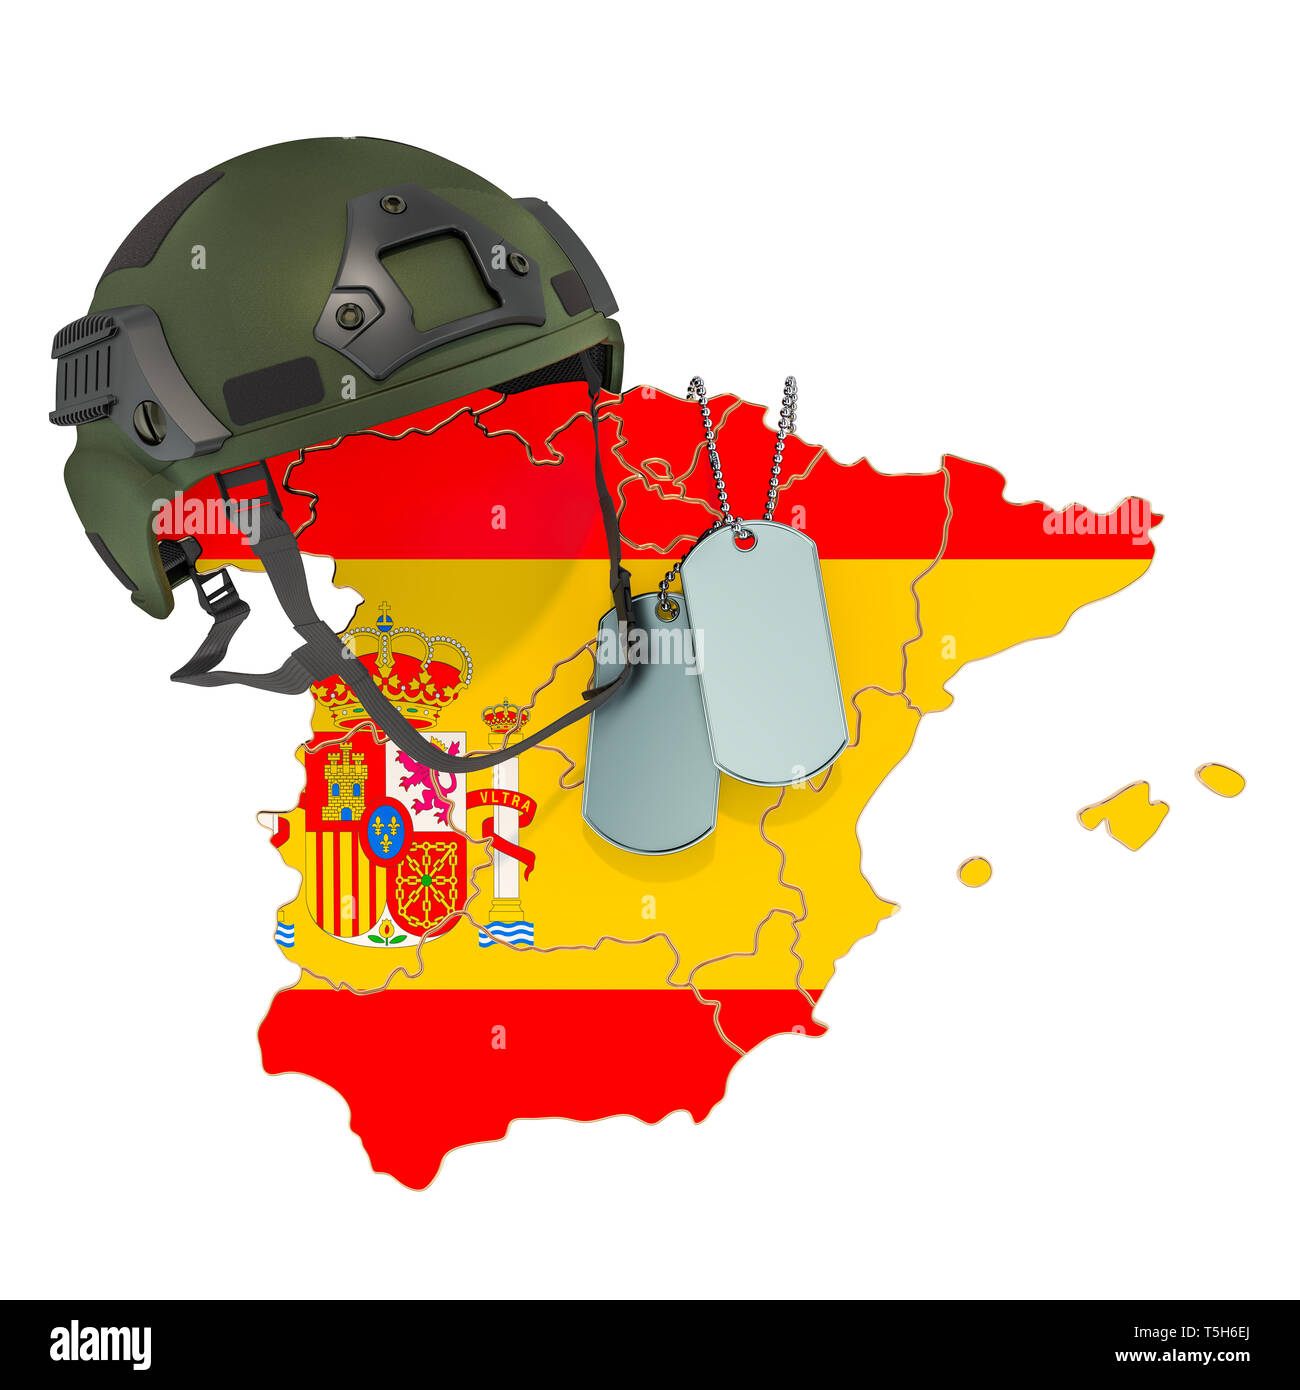 Spanisch militärische Kraft, Armee oder Krieg Konzept. 3D-Rendering auf weißem Hintergrund Stockfoto